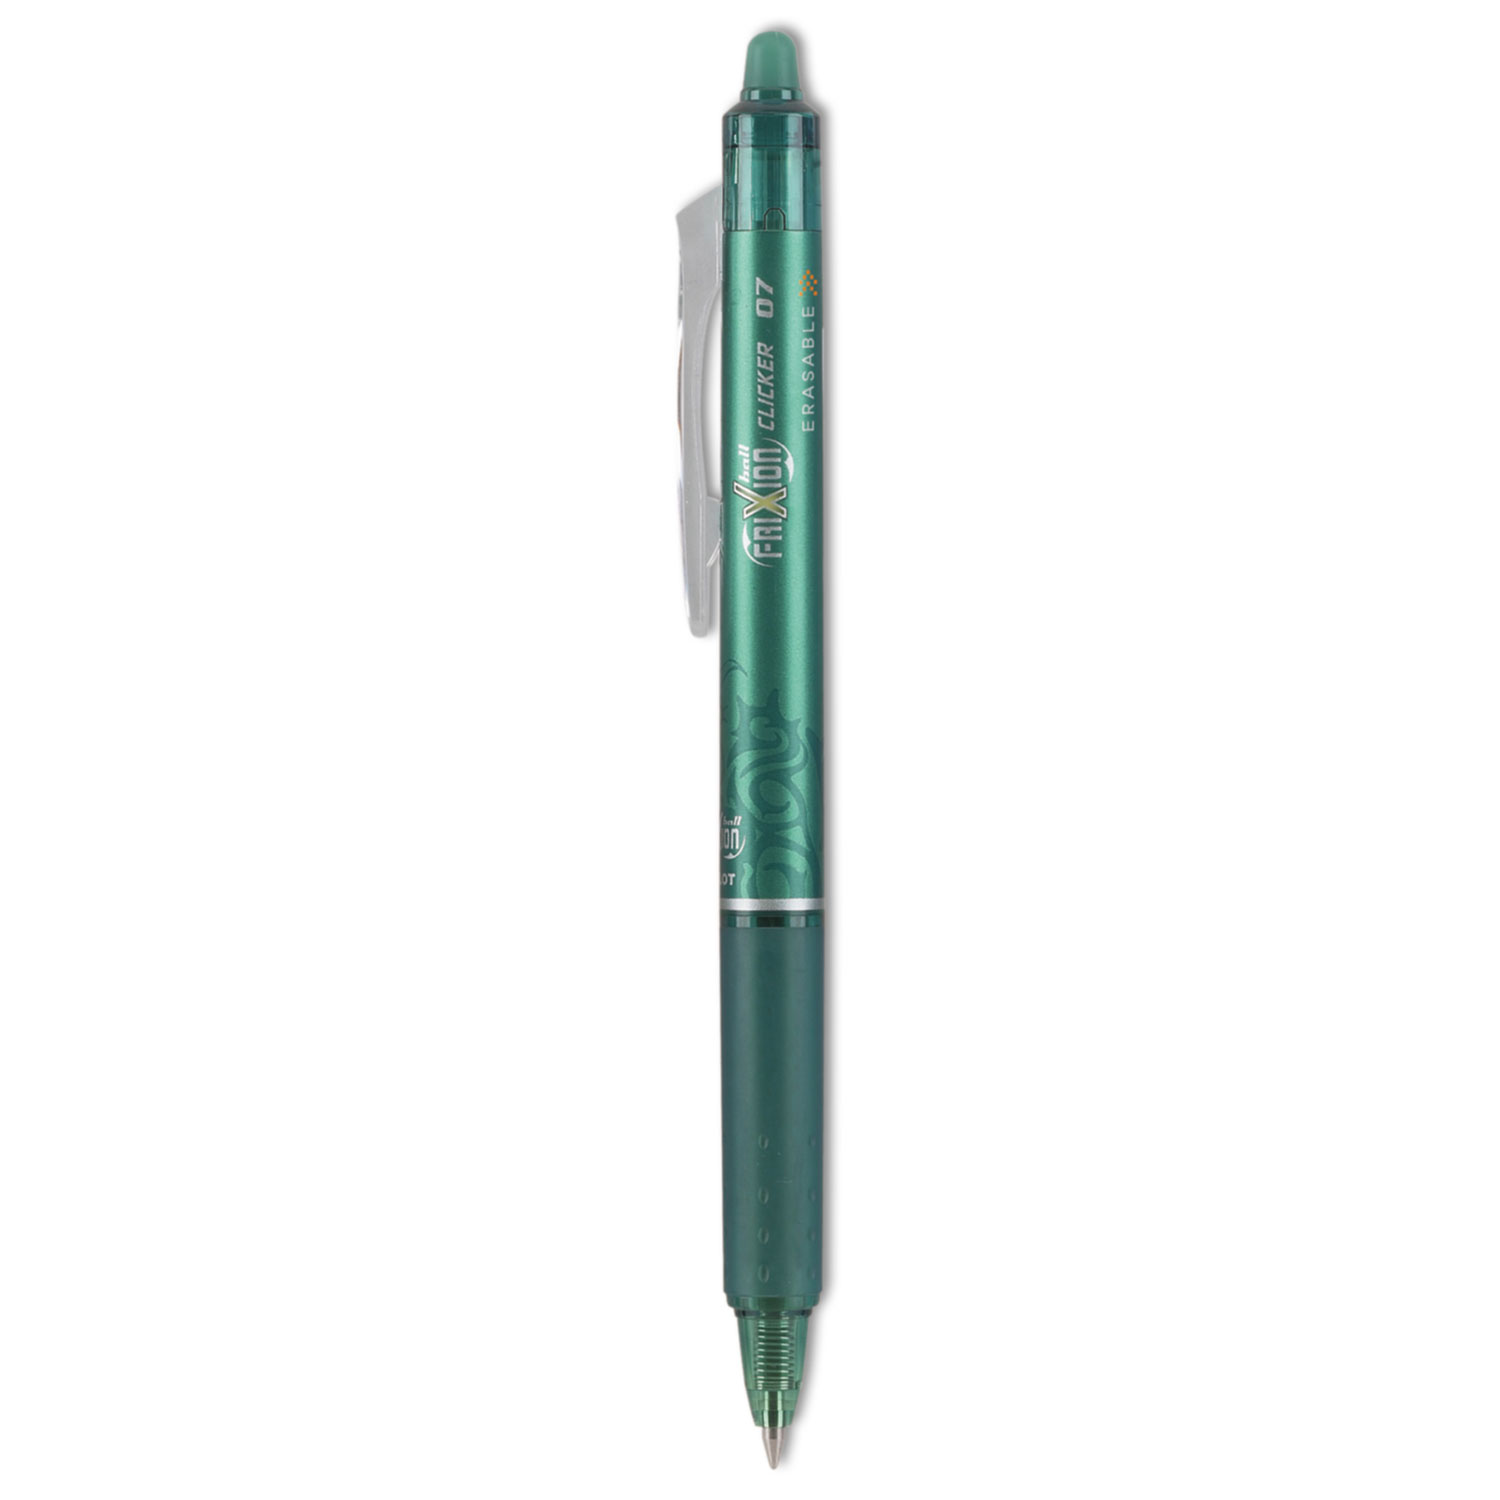 Save on Pilot Gel Ink Erasable Pens Fine 0.7mm Order Online